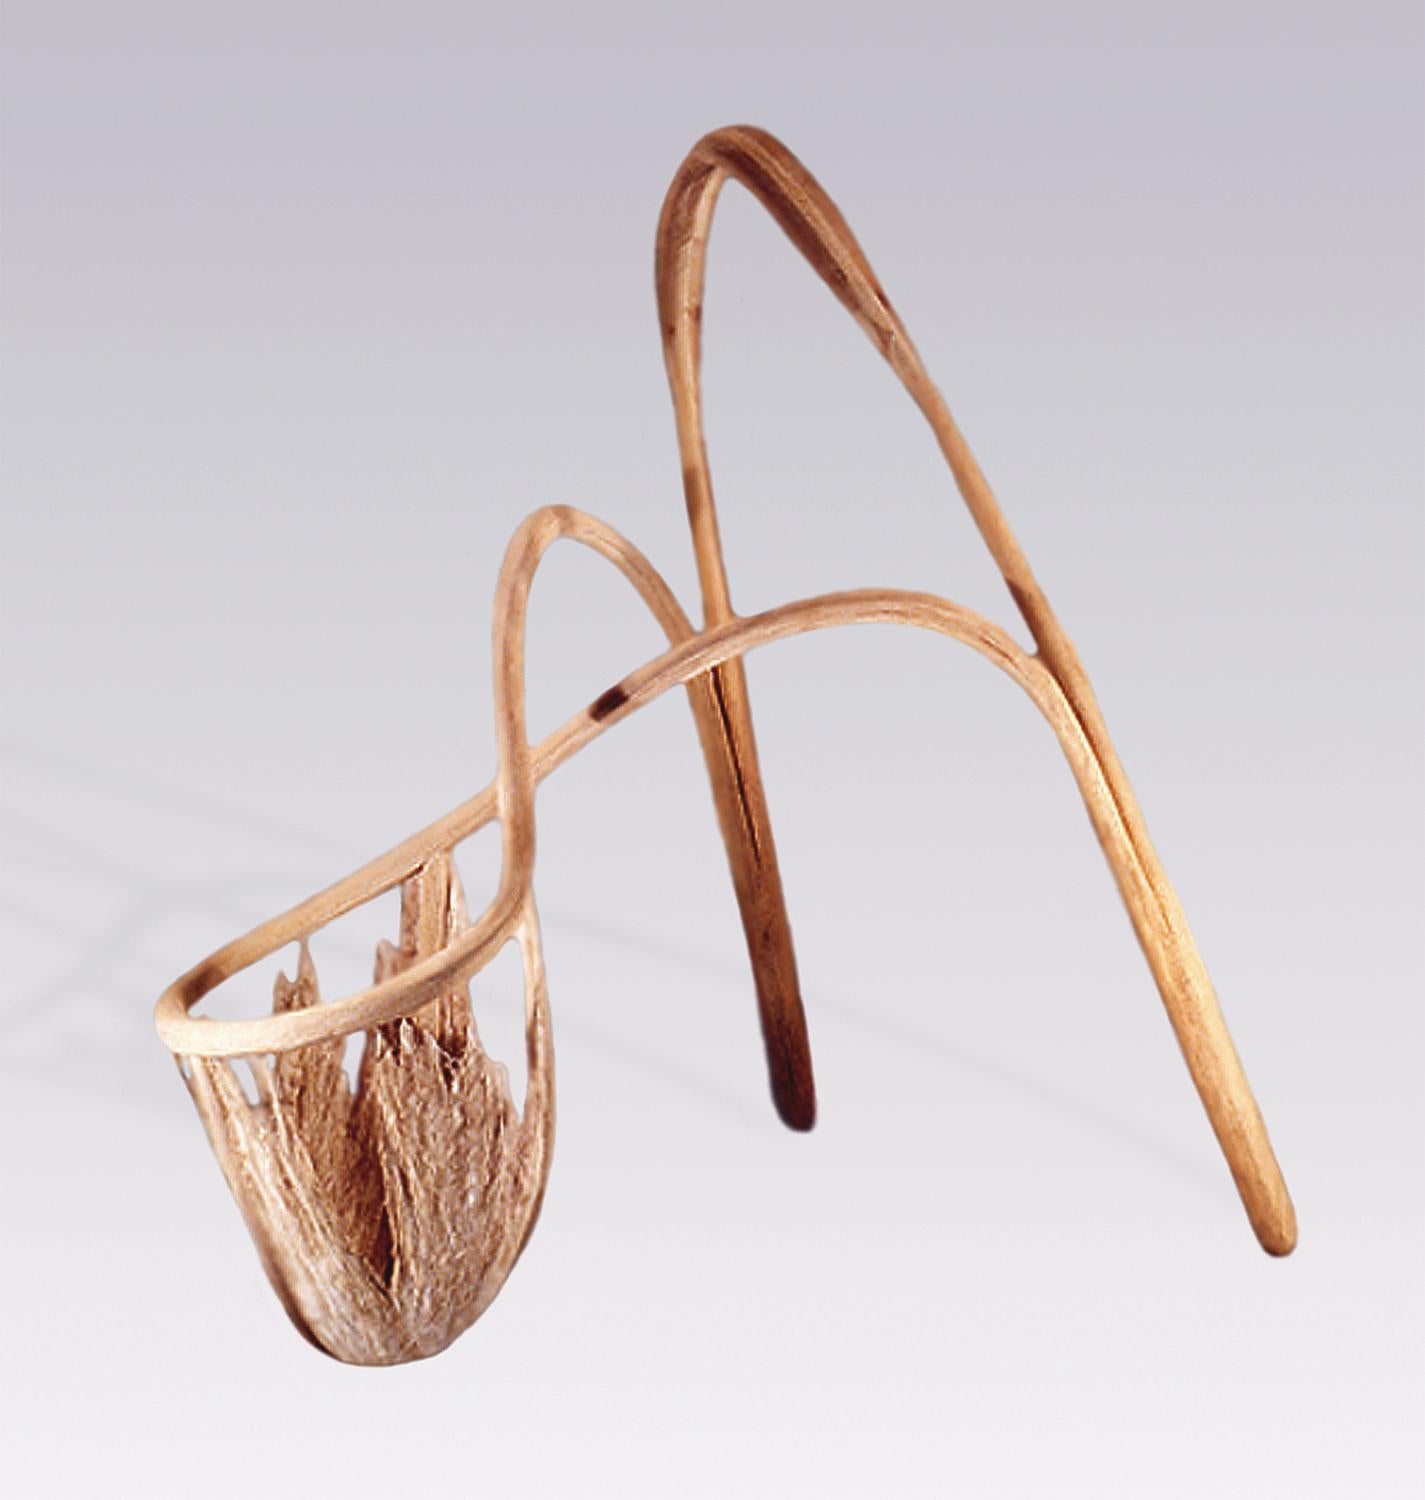 "Vaisseau n°51 : Akimbo"
Sculpture abstraite autoportante issue de la série de plus de 80 pièces "Vessel Series" de Jeff Key. Construit en bois et en lin, un matériau végétal naturel.

Né et élevé à San Francisco, Jeff Key a axé son travail de